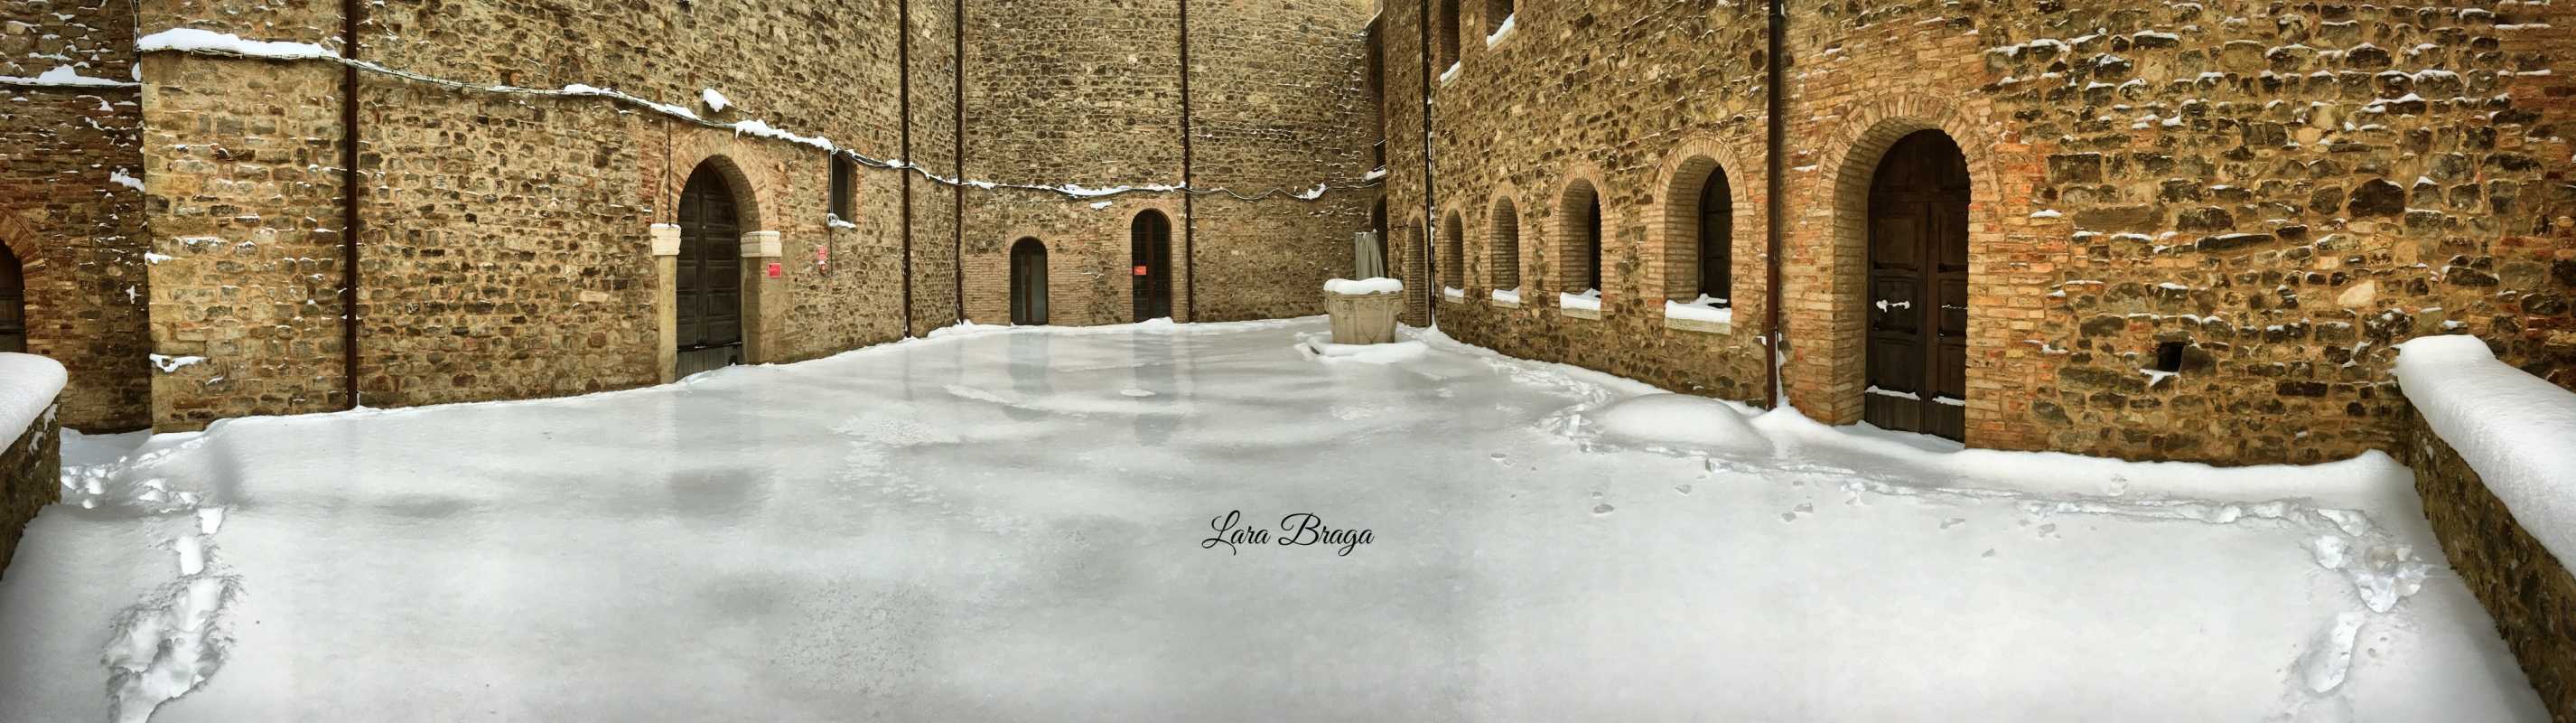 La Rocca e la Galaverna....ghiaccio sulla neve116 - Larabraga19